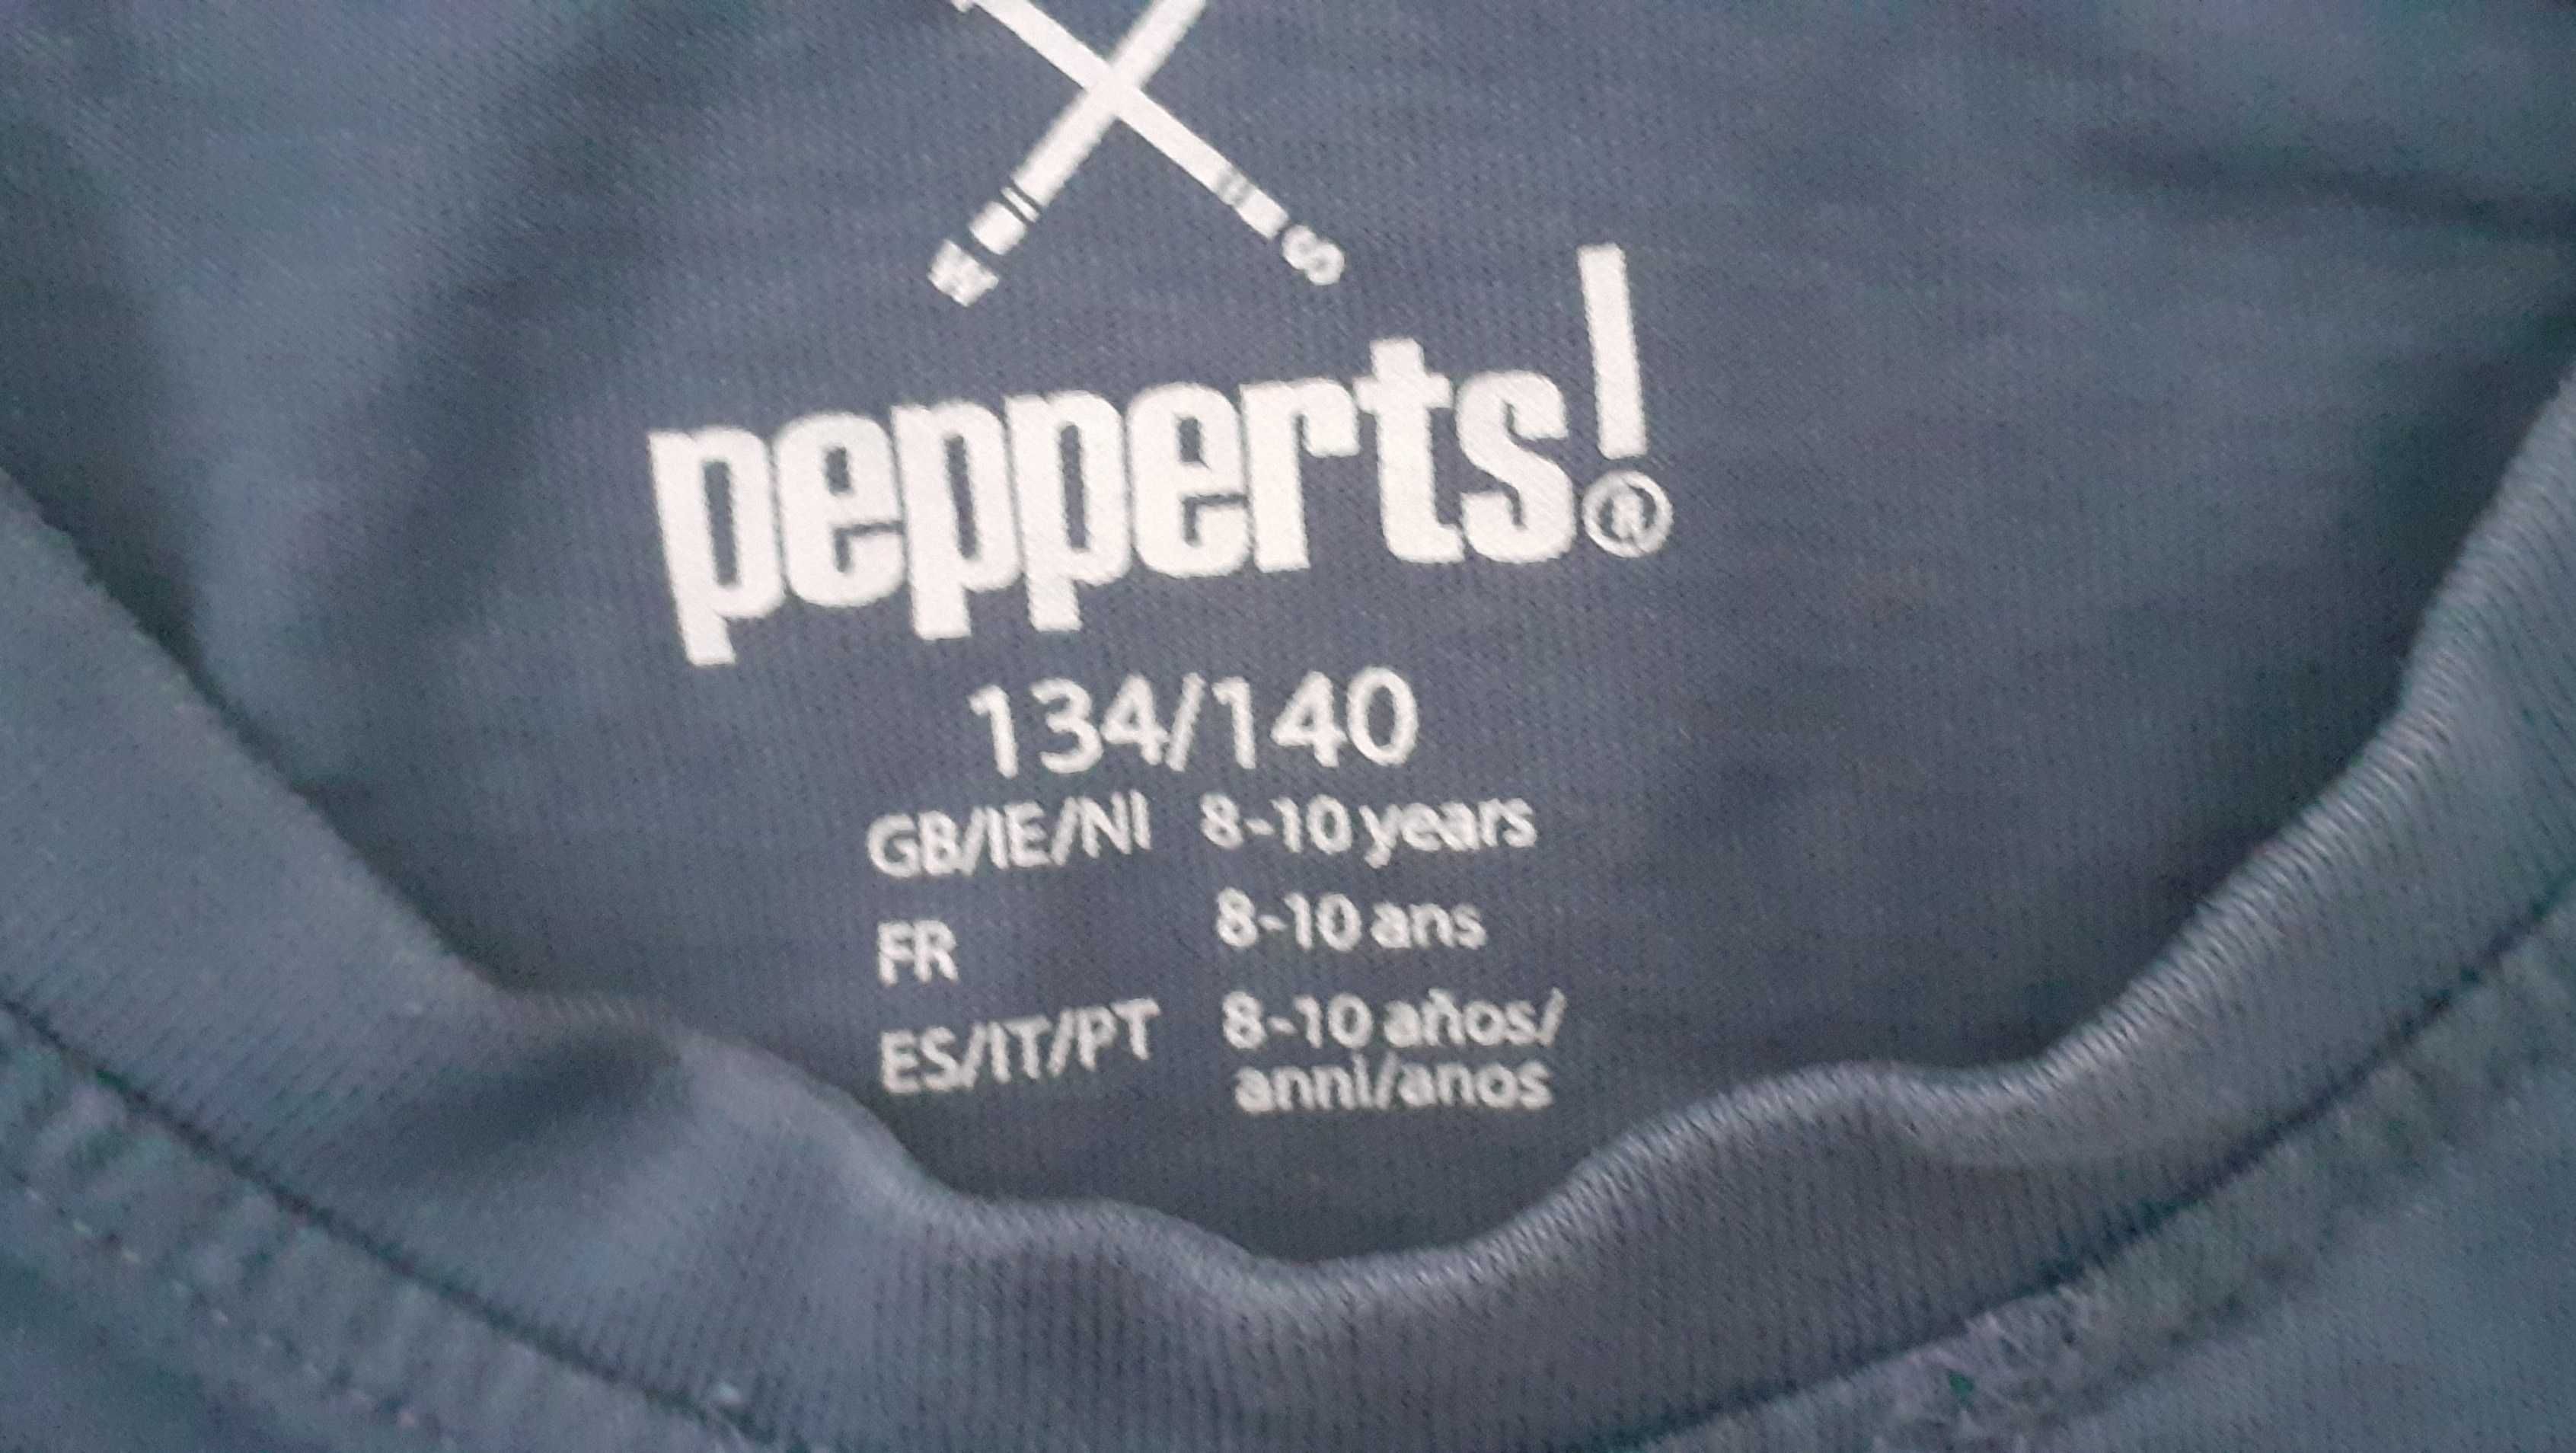 Zestaw piżam 134/140 dla chłopca pepperts! Stan bdb